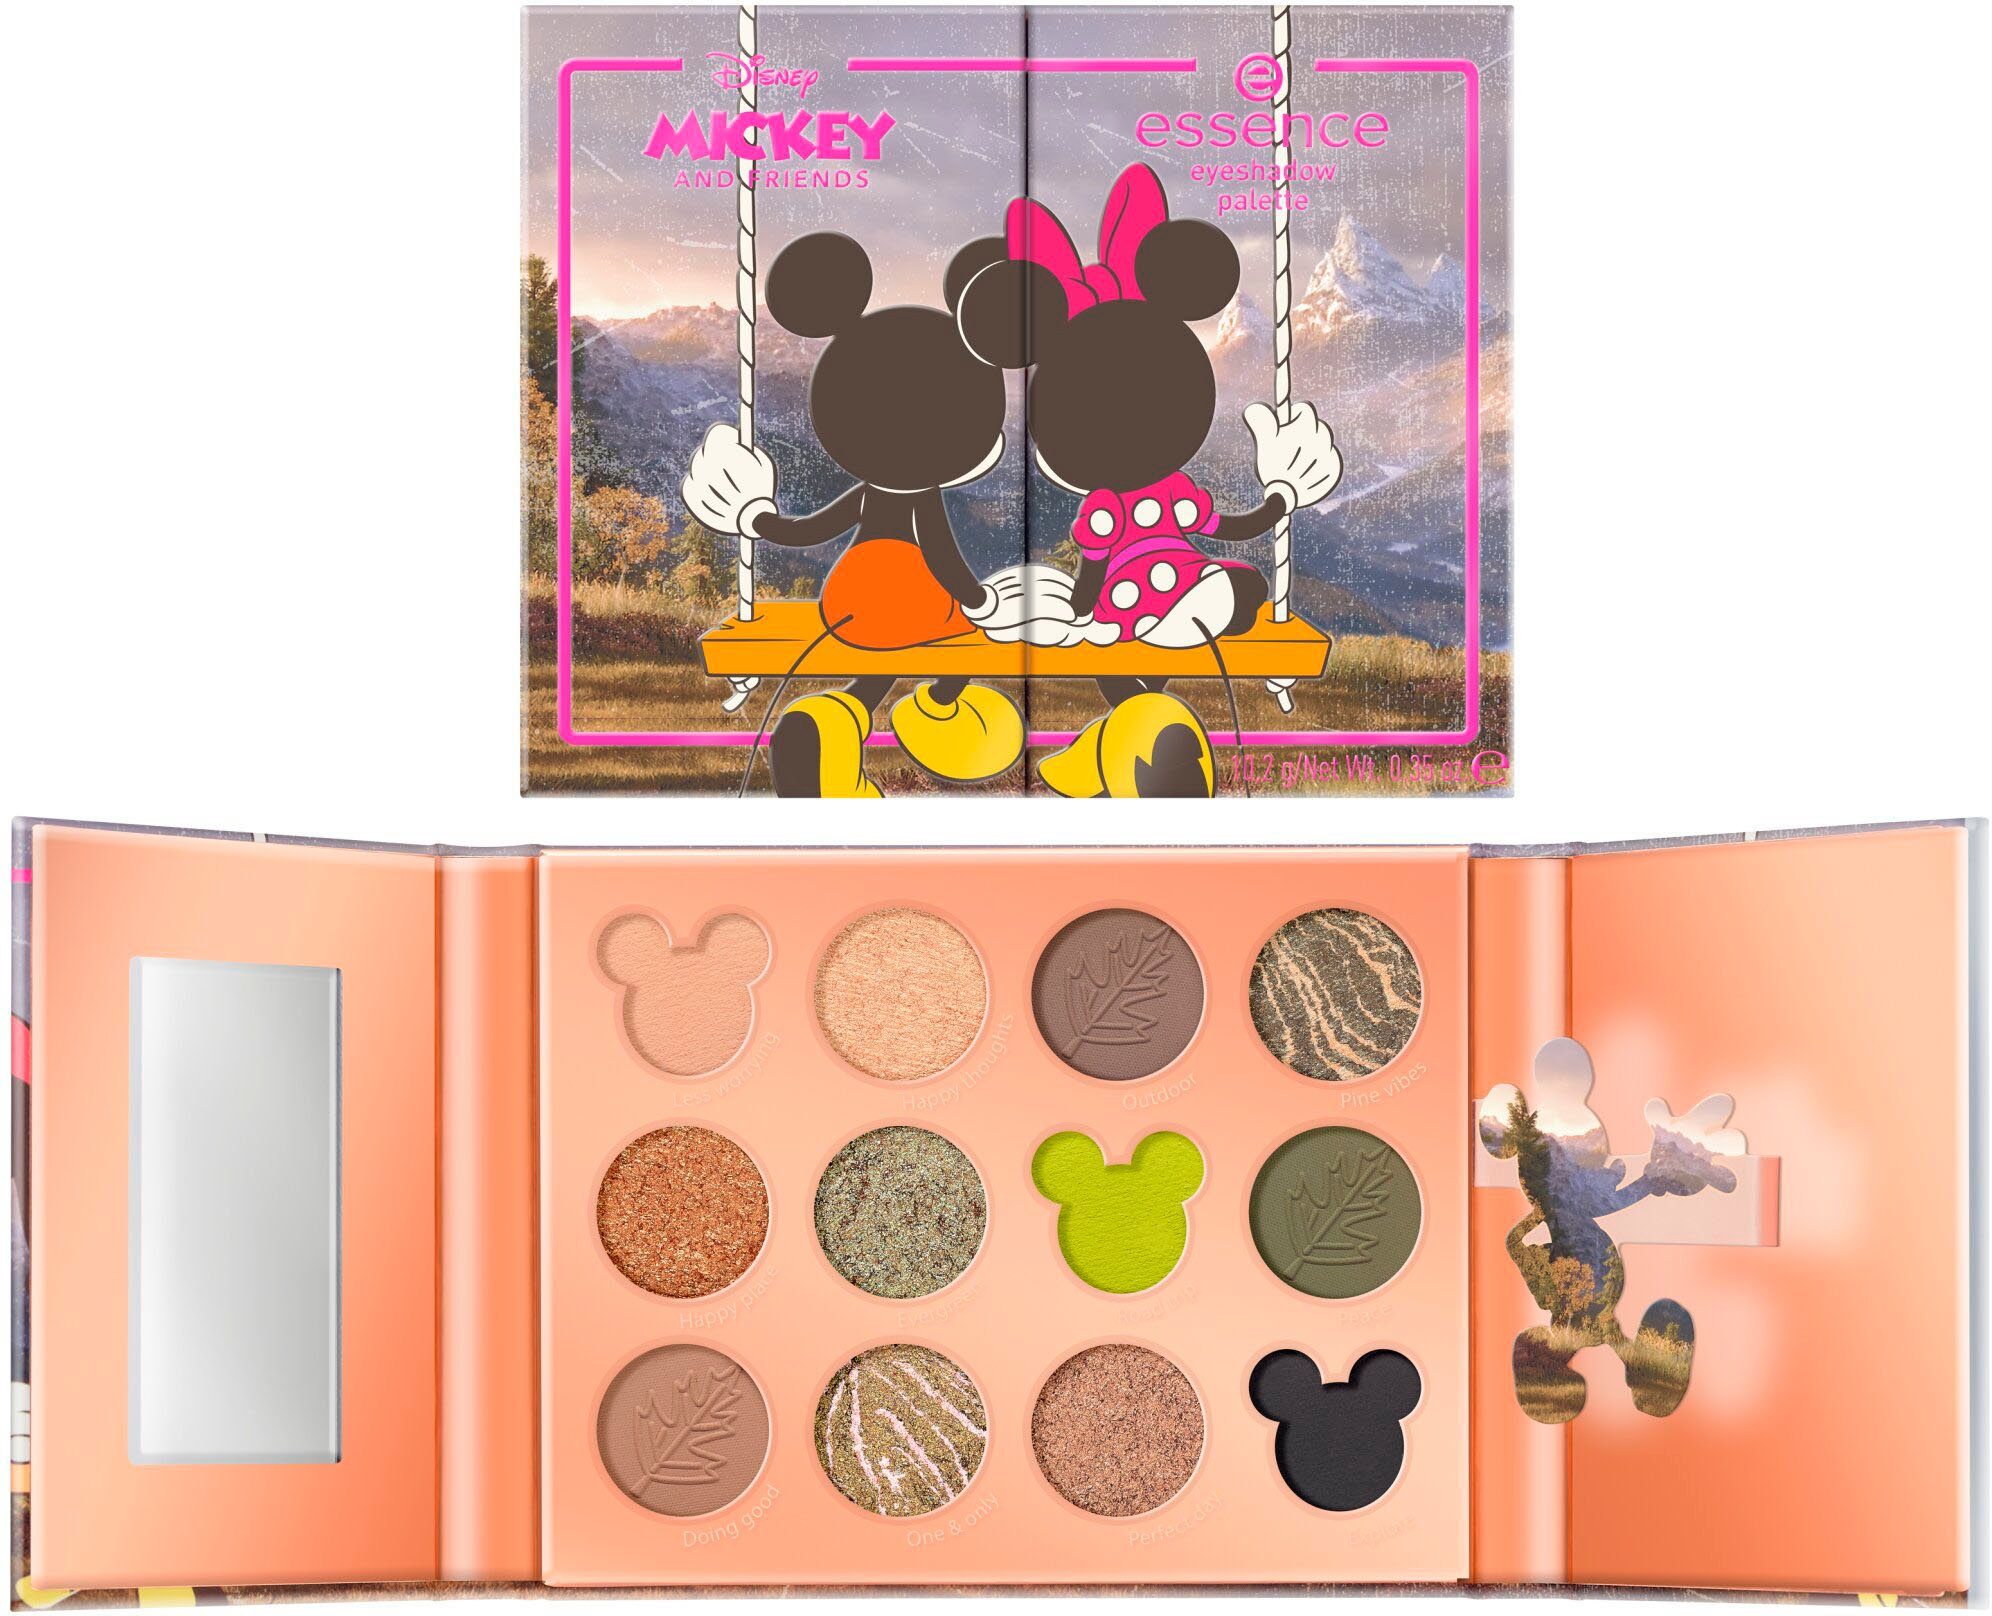 Essence Lidschatten-Palette Disney Mickey and Friends eyeshadow palette, Augen-Make-Up für abwechslungsreiche Looks | Lidschatten